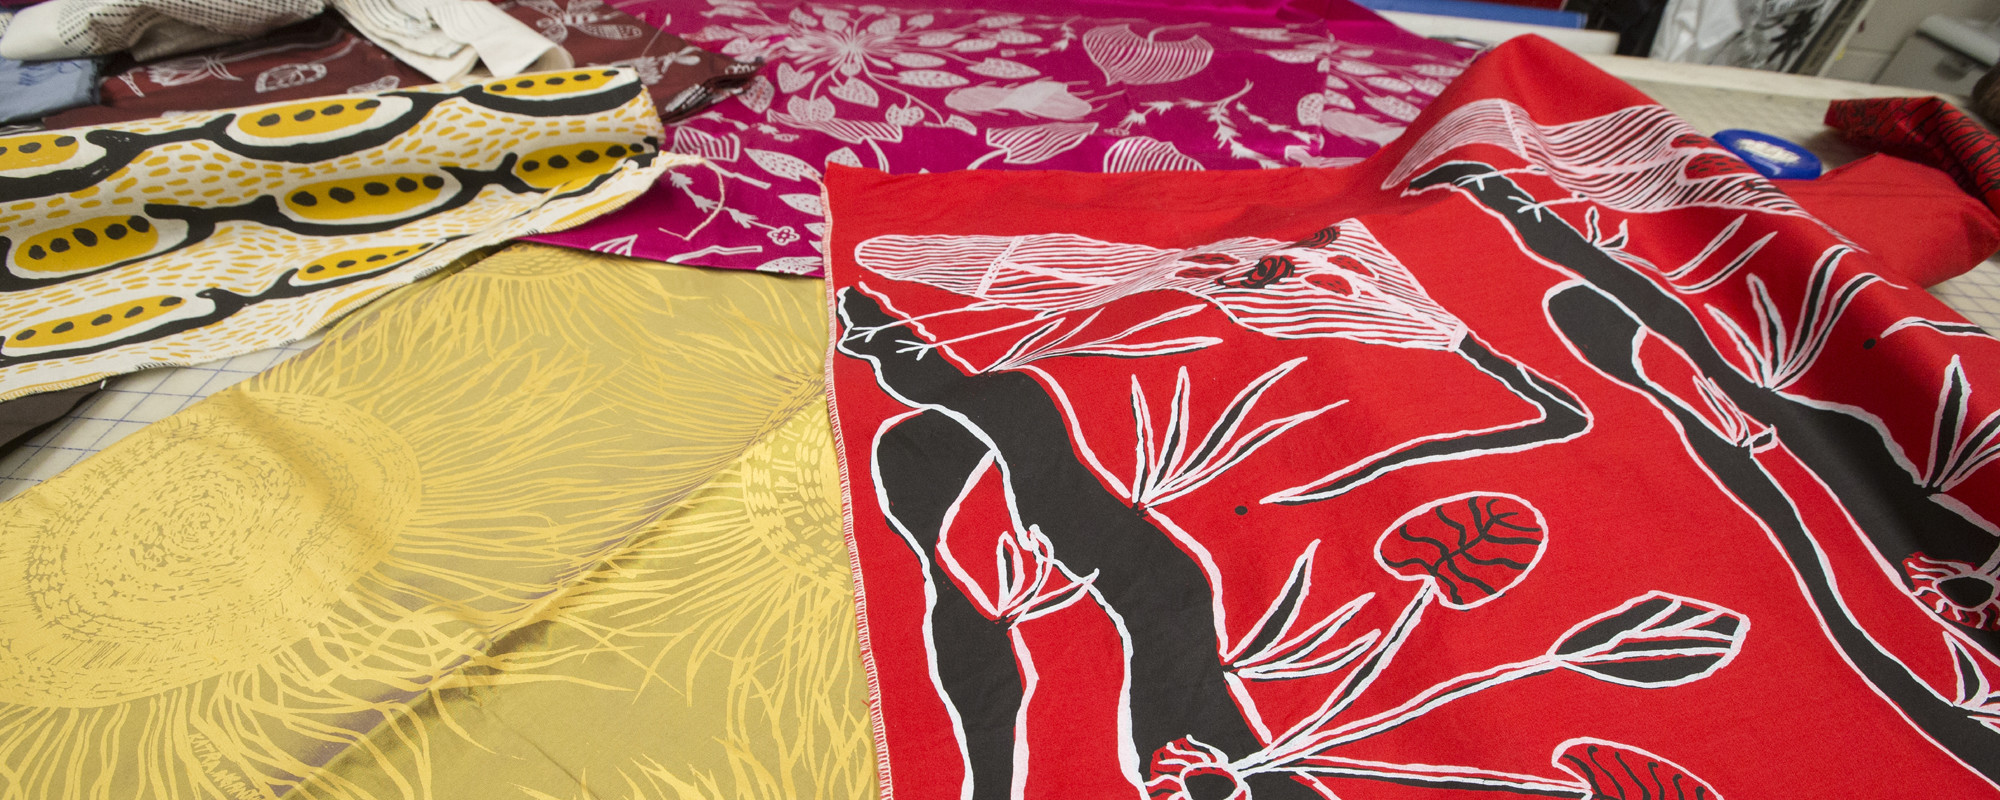 Fabric Swatches of Aboriginal designs 